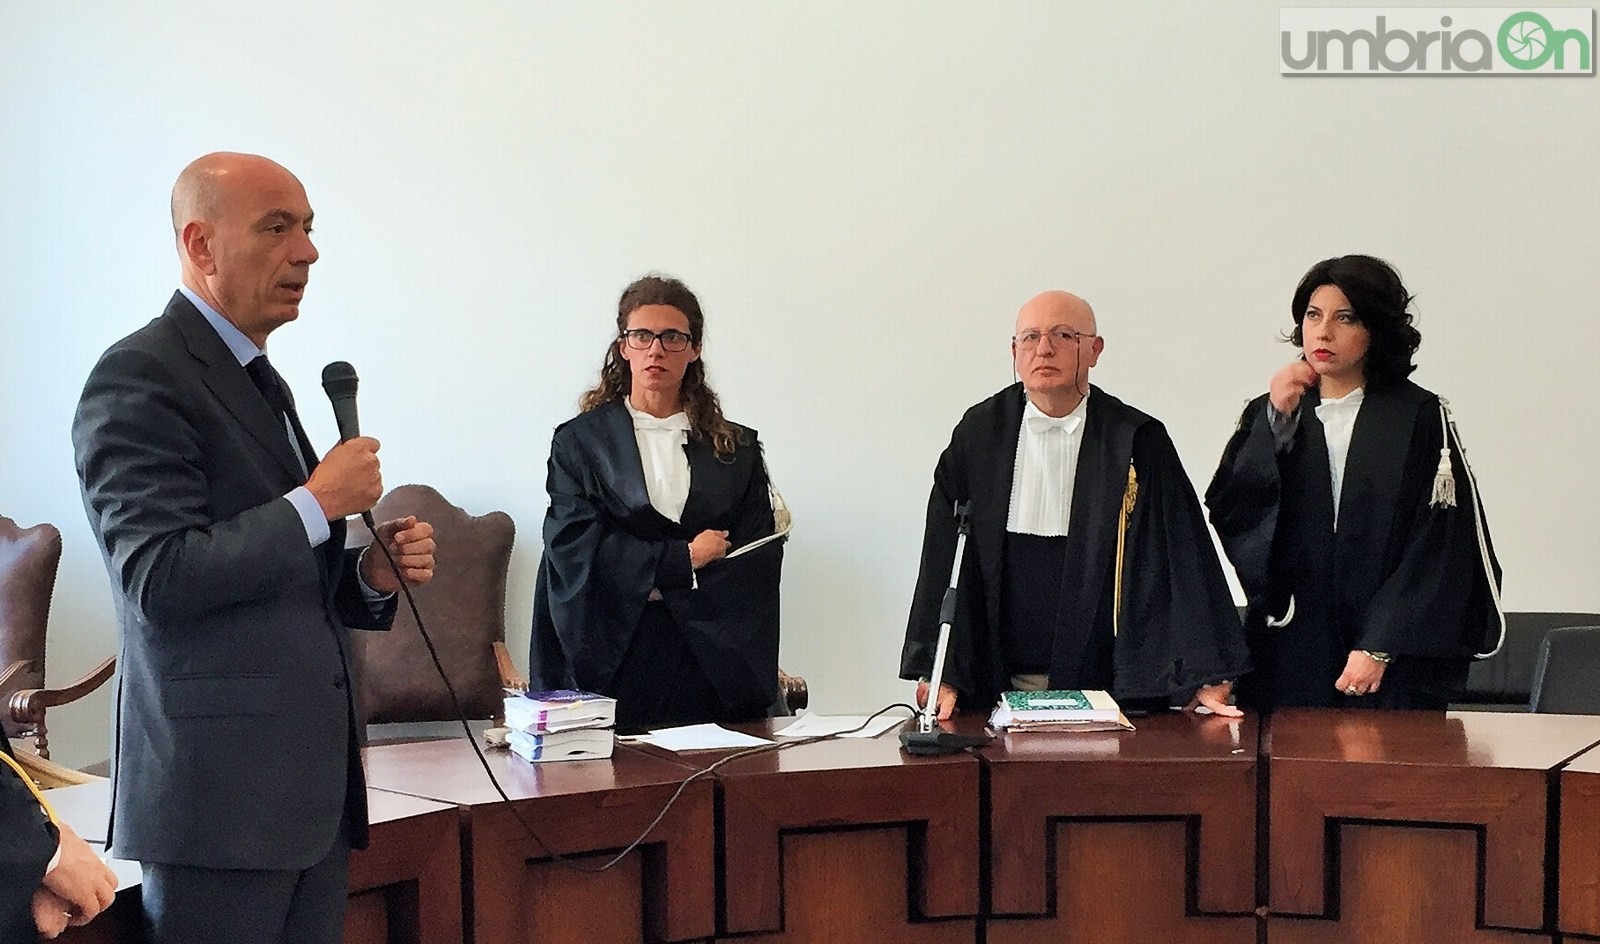 Insediamento nuovo procuratore Terni, Alberto Liguori, giuramento tribunale - 12 aprile 2016 (12)